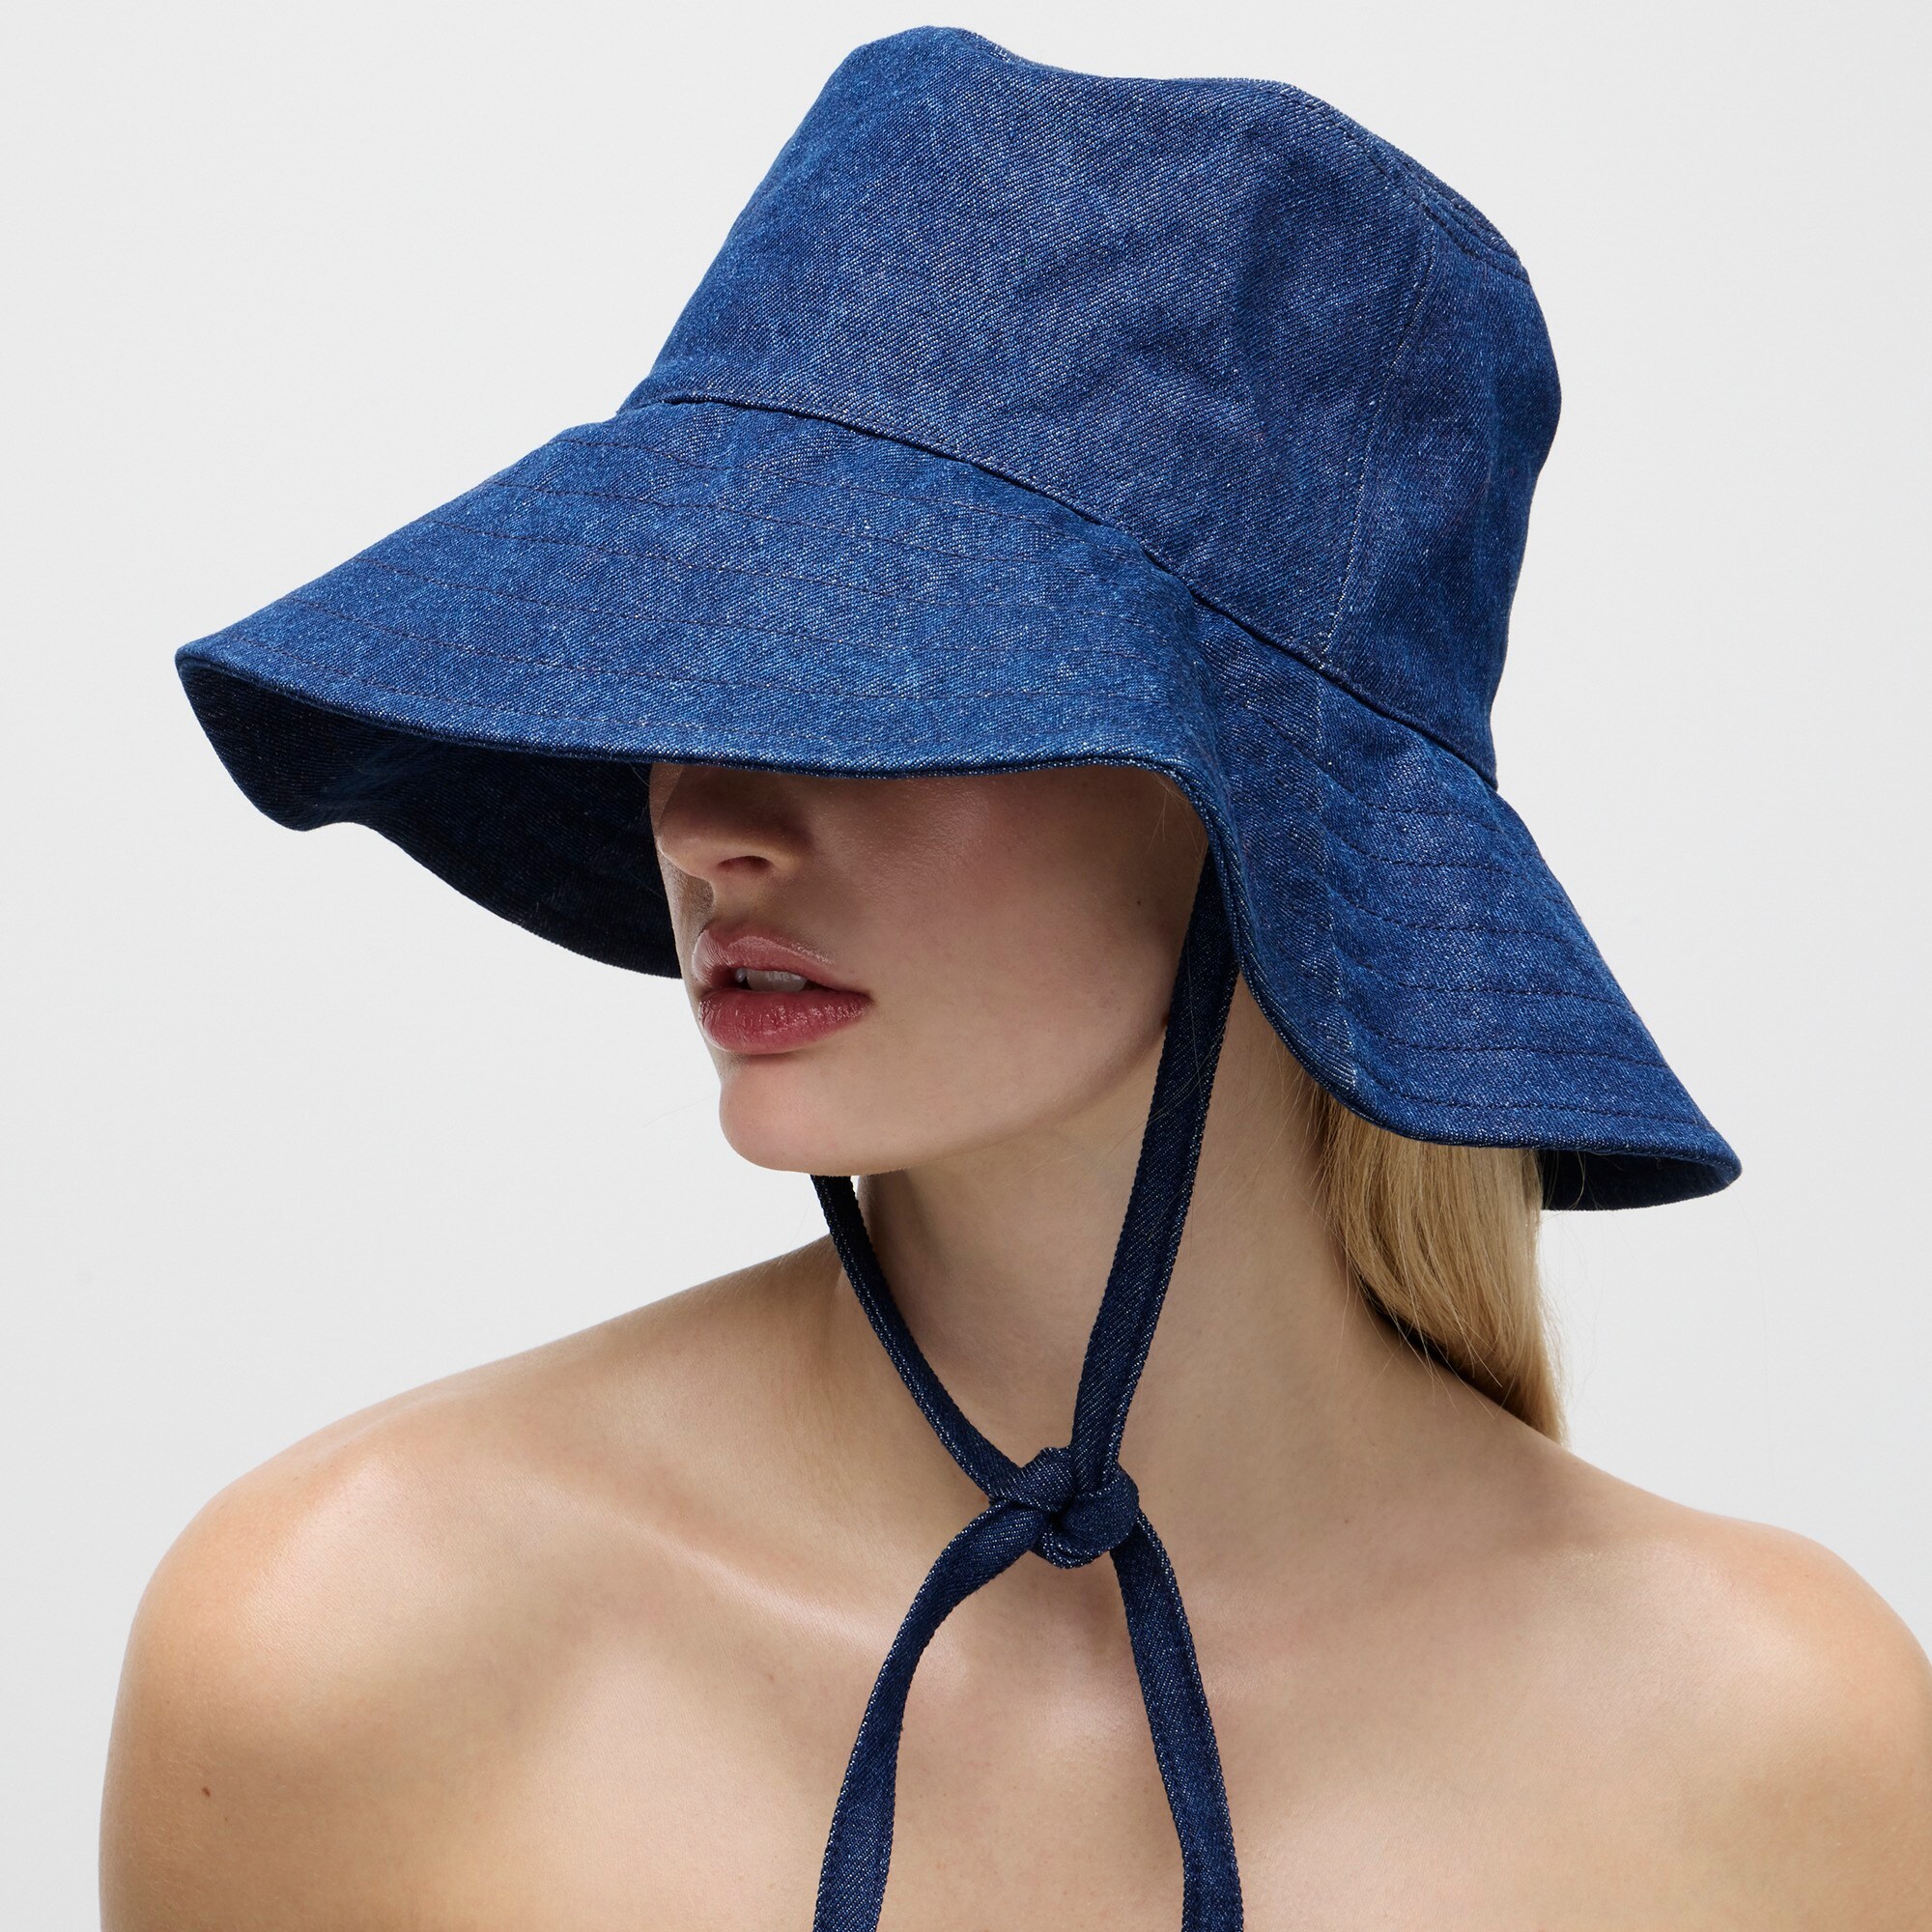 j.crew: denim bucket hat with ties for women